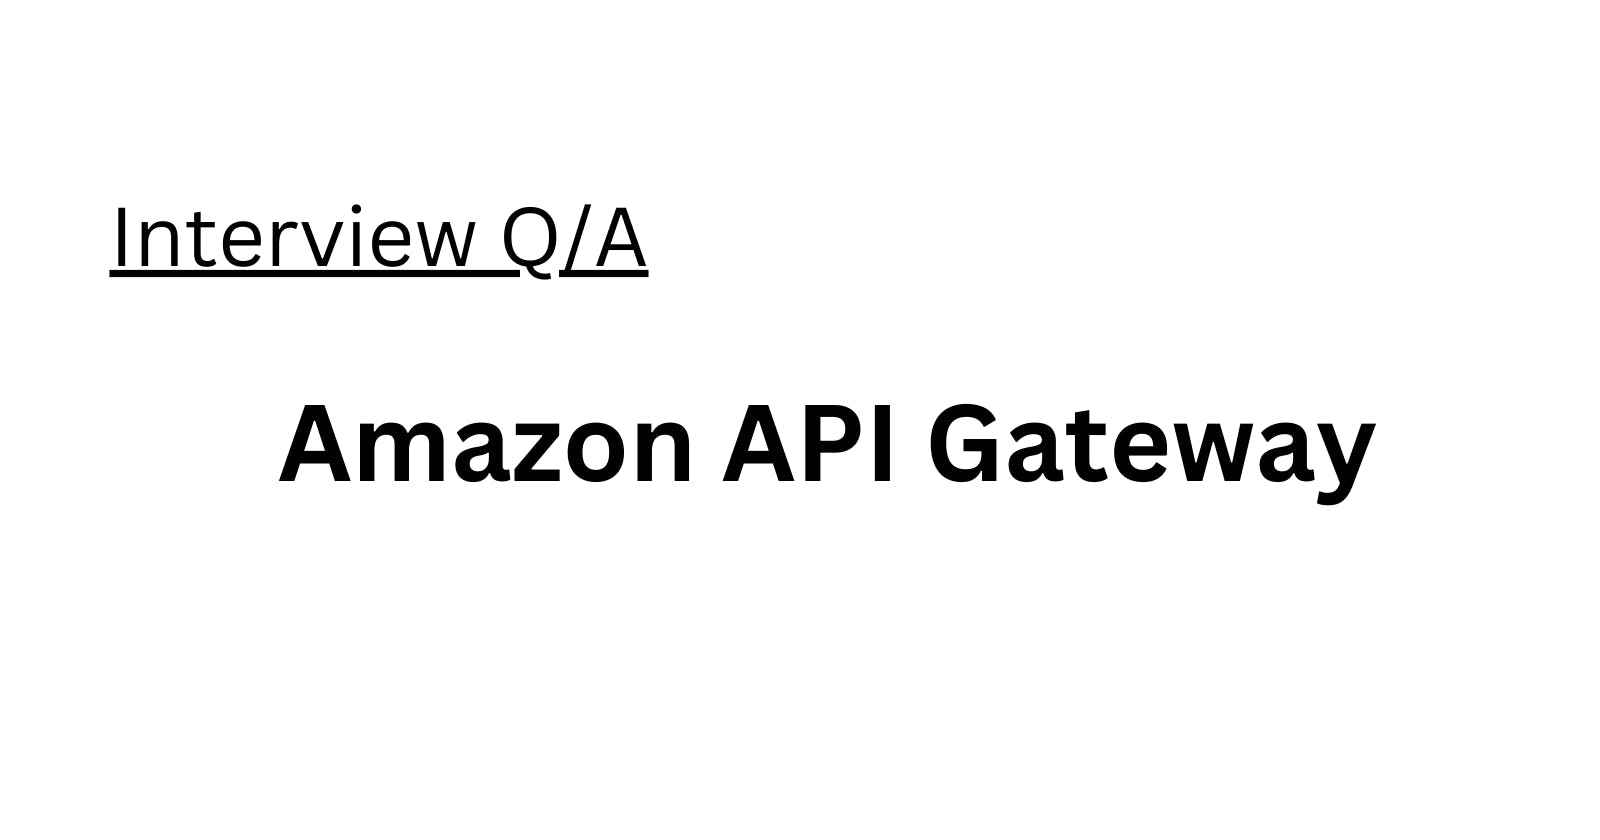 Amazon API Gateway Interview Q/A